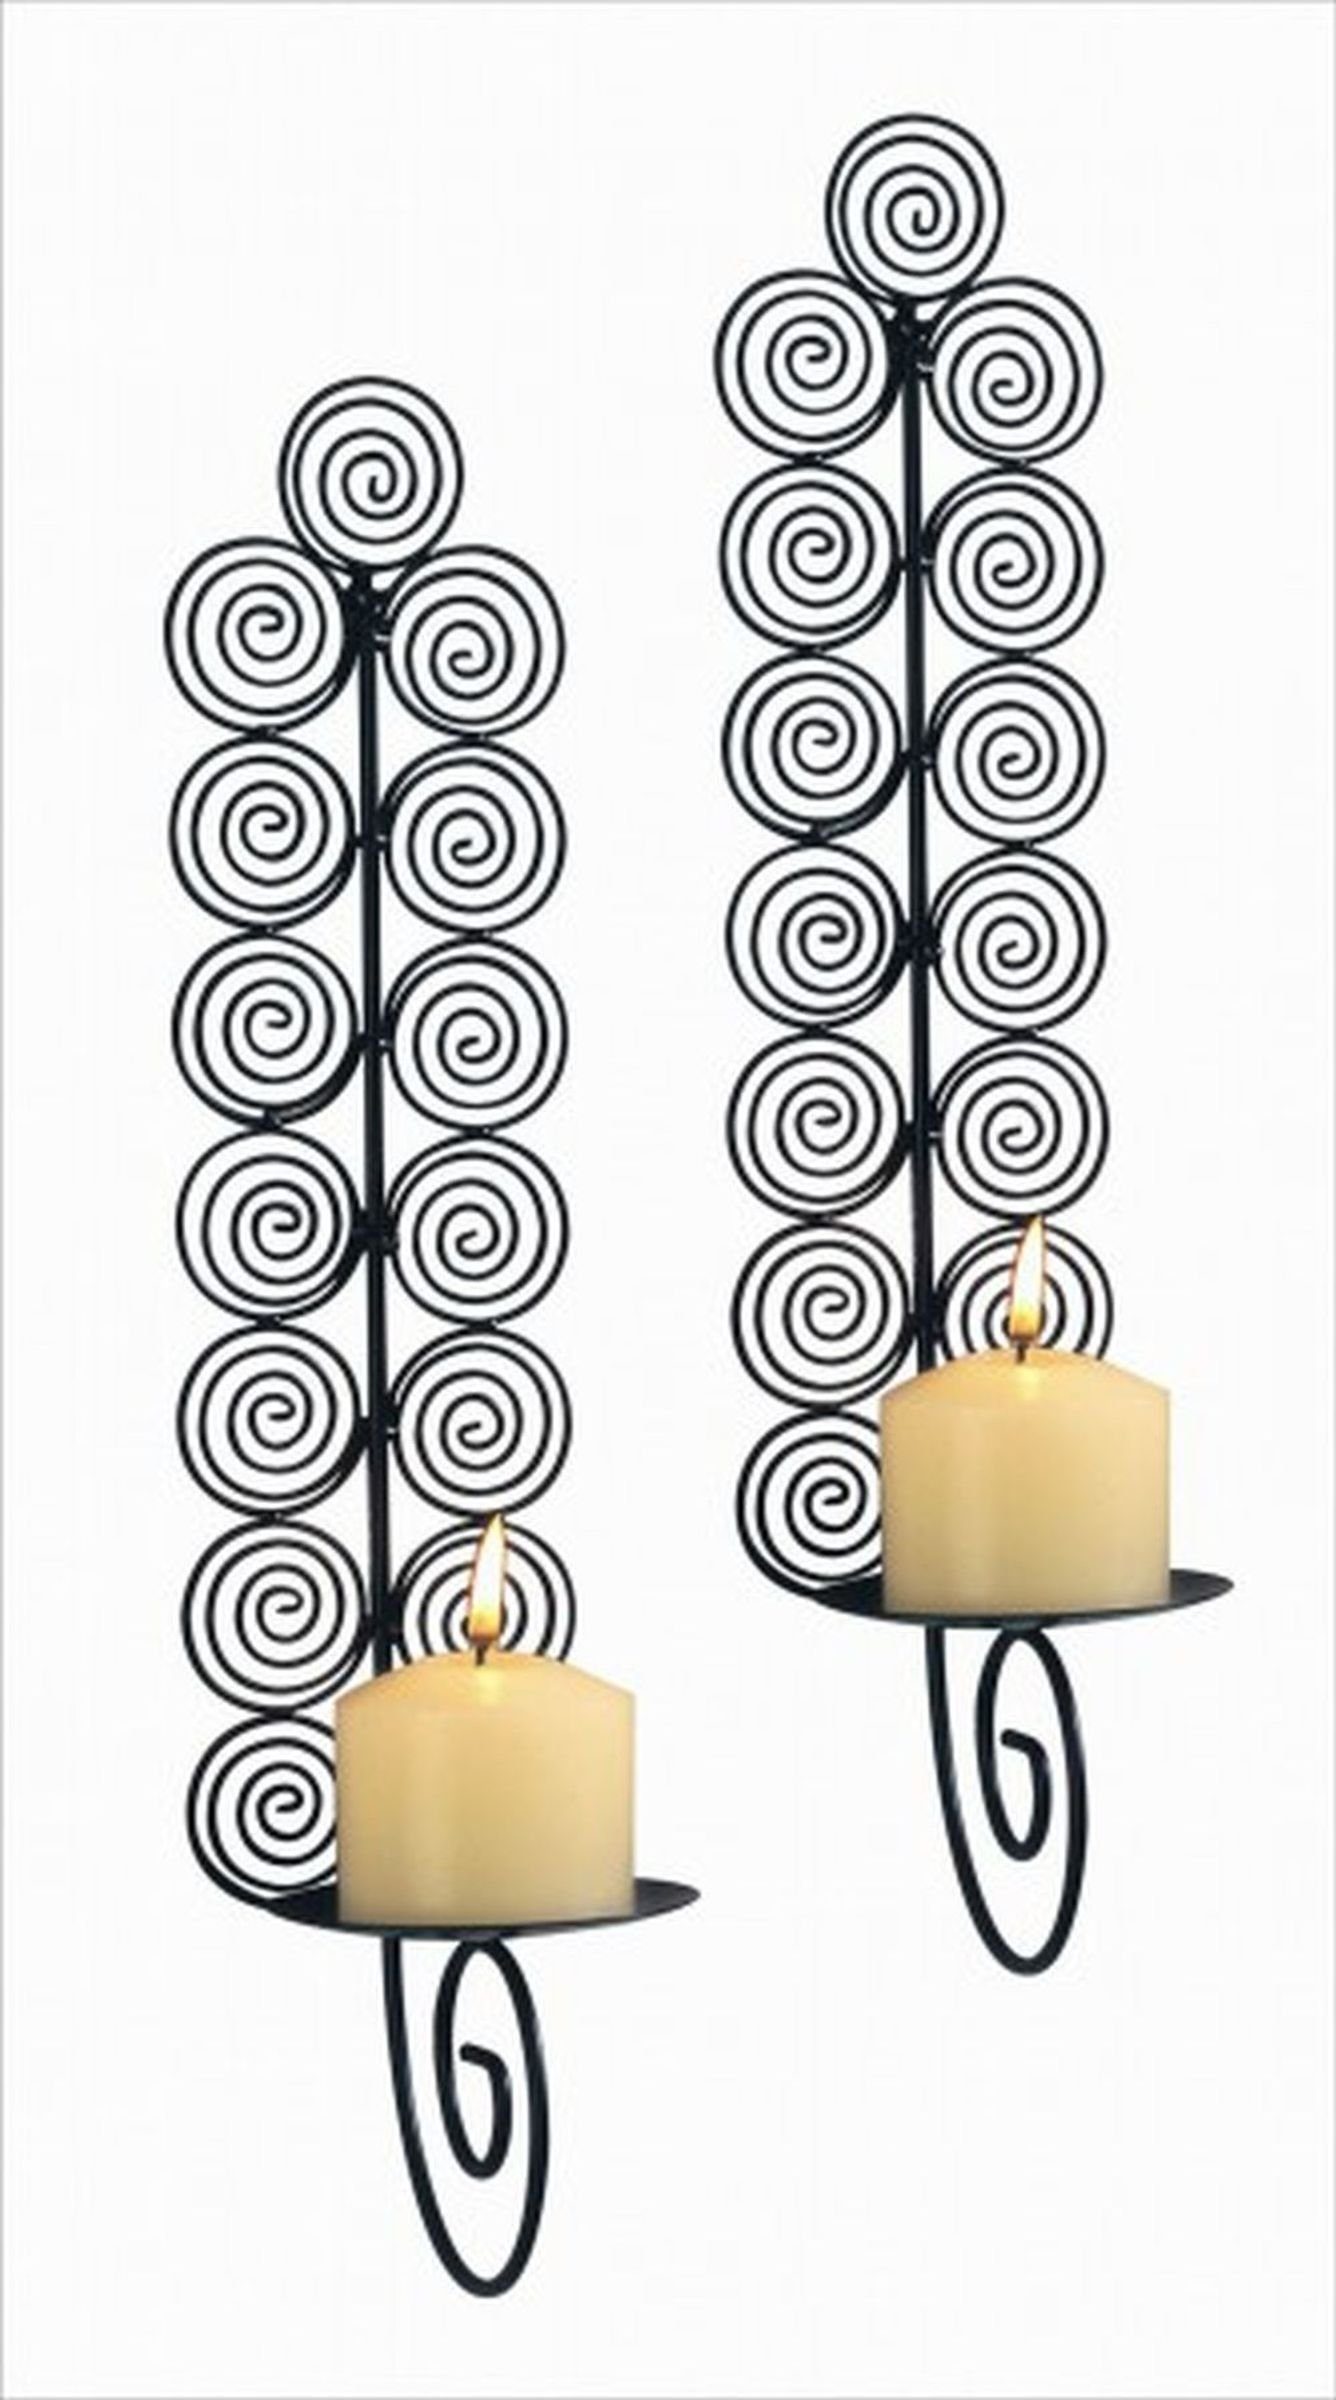 2er Gravidus Kerzen Wandkerzenhalter Set Kerzenwandhalter Wanddeko Deko